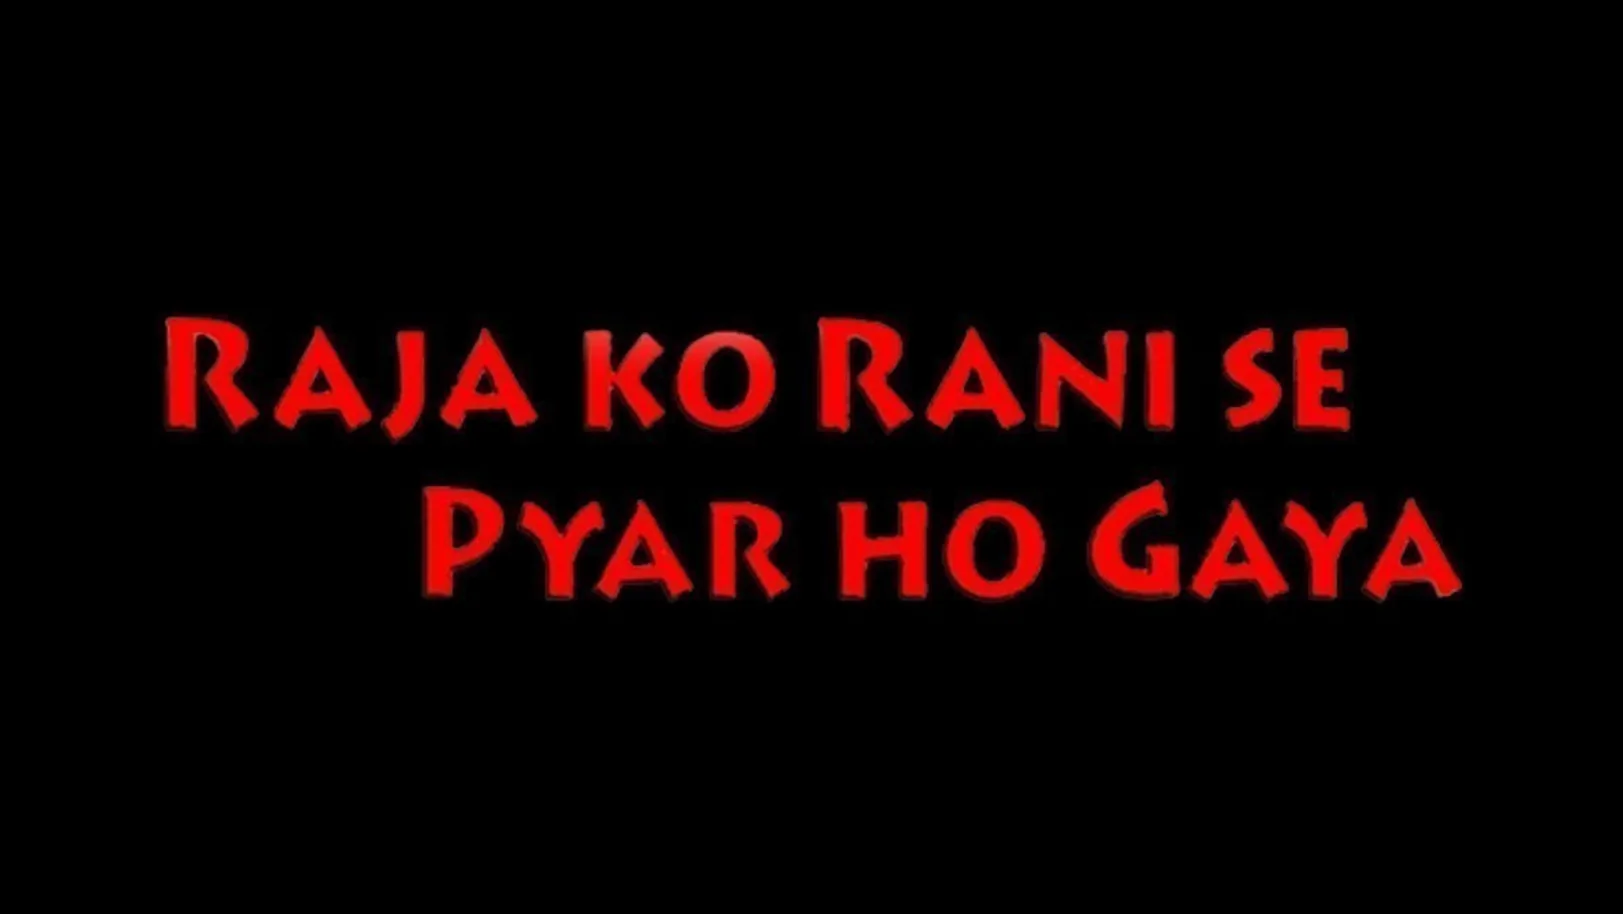 Raja Ko Rani Se Pyar Ho Gaya Movie